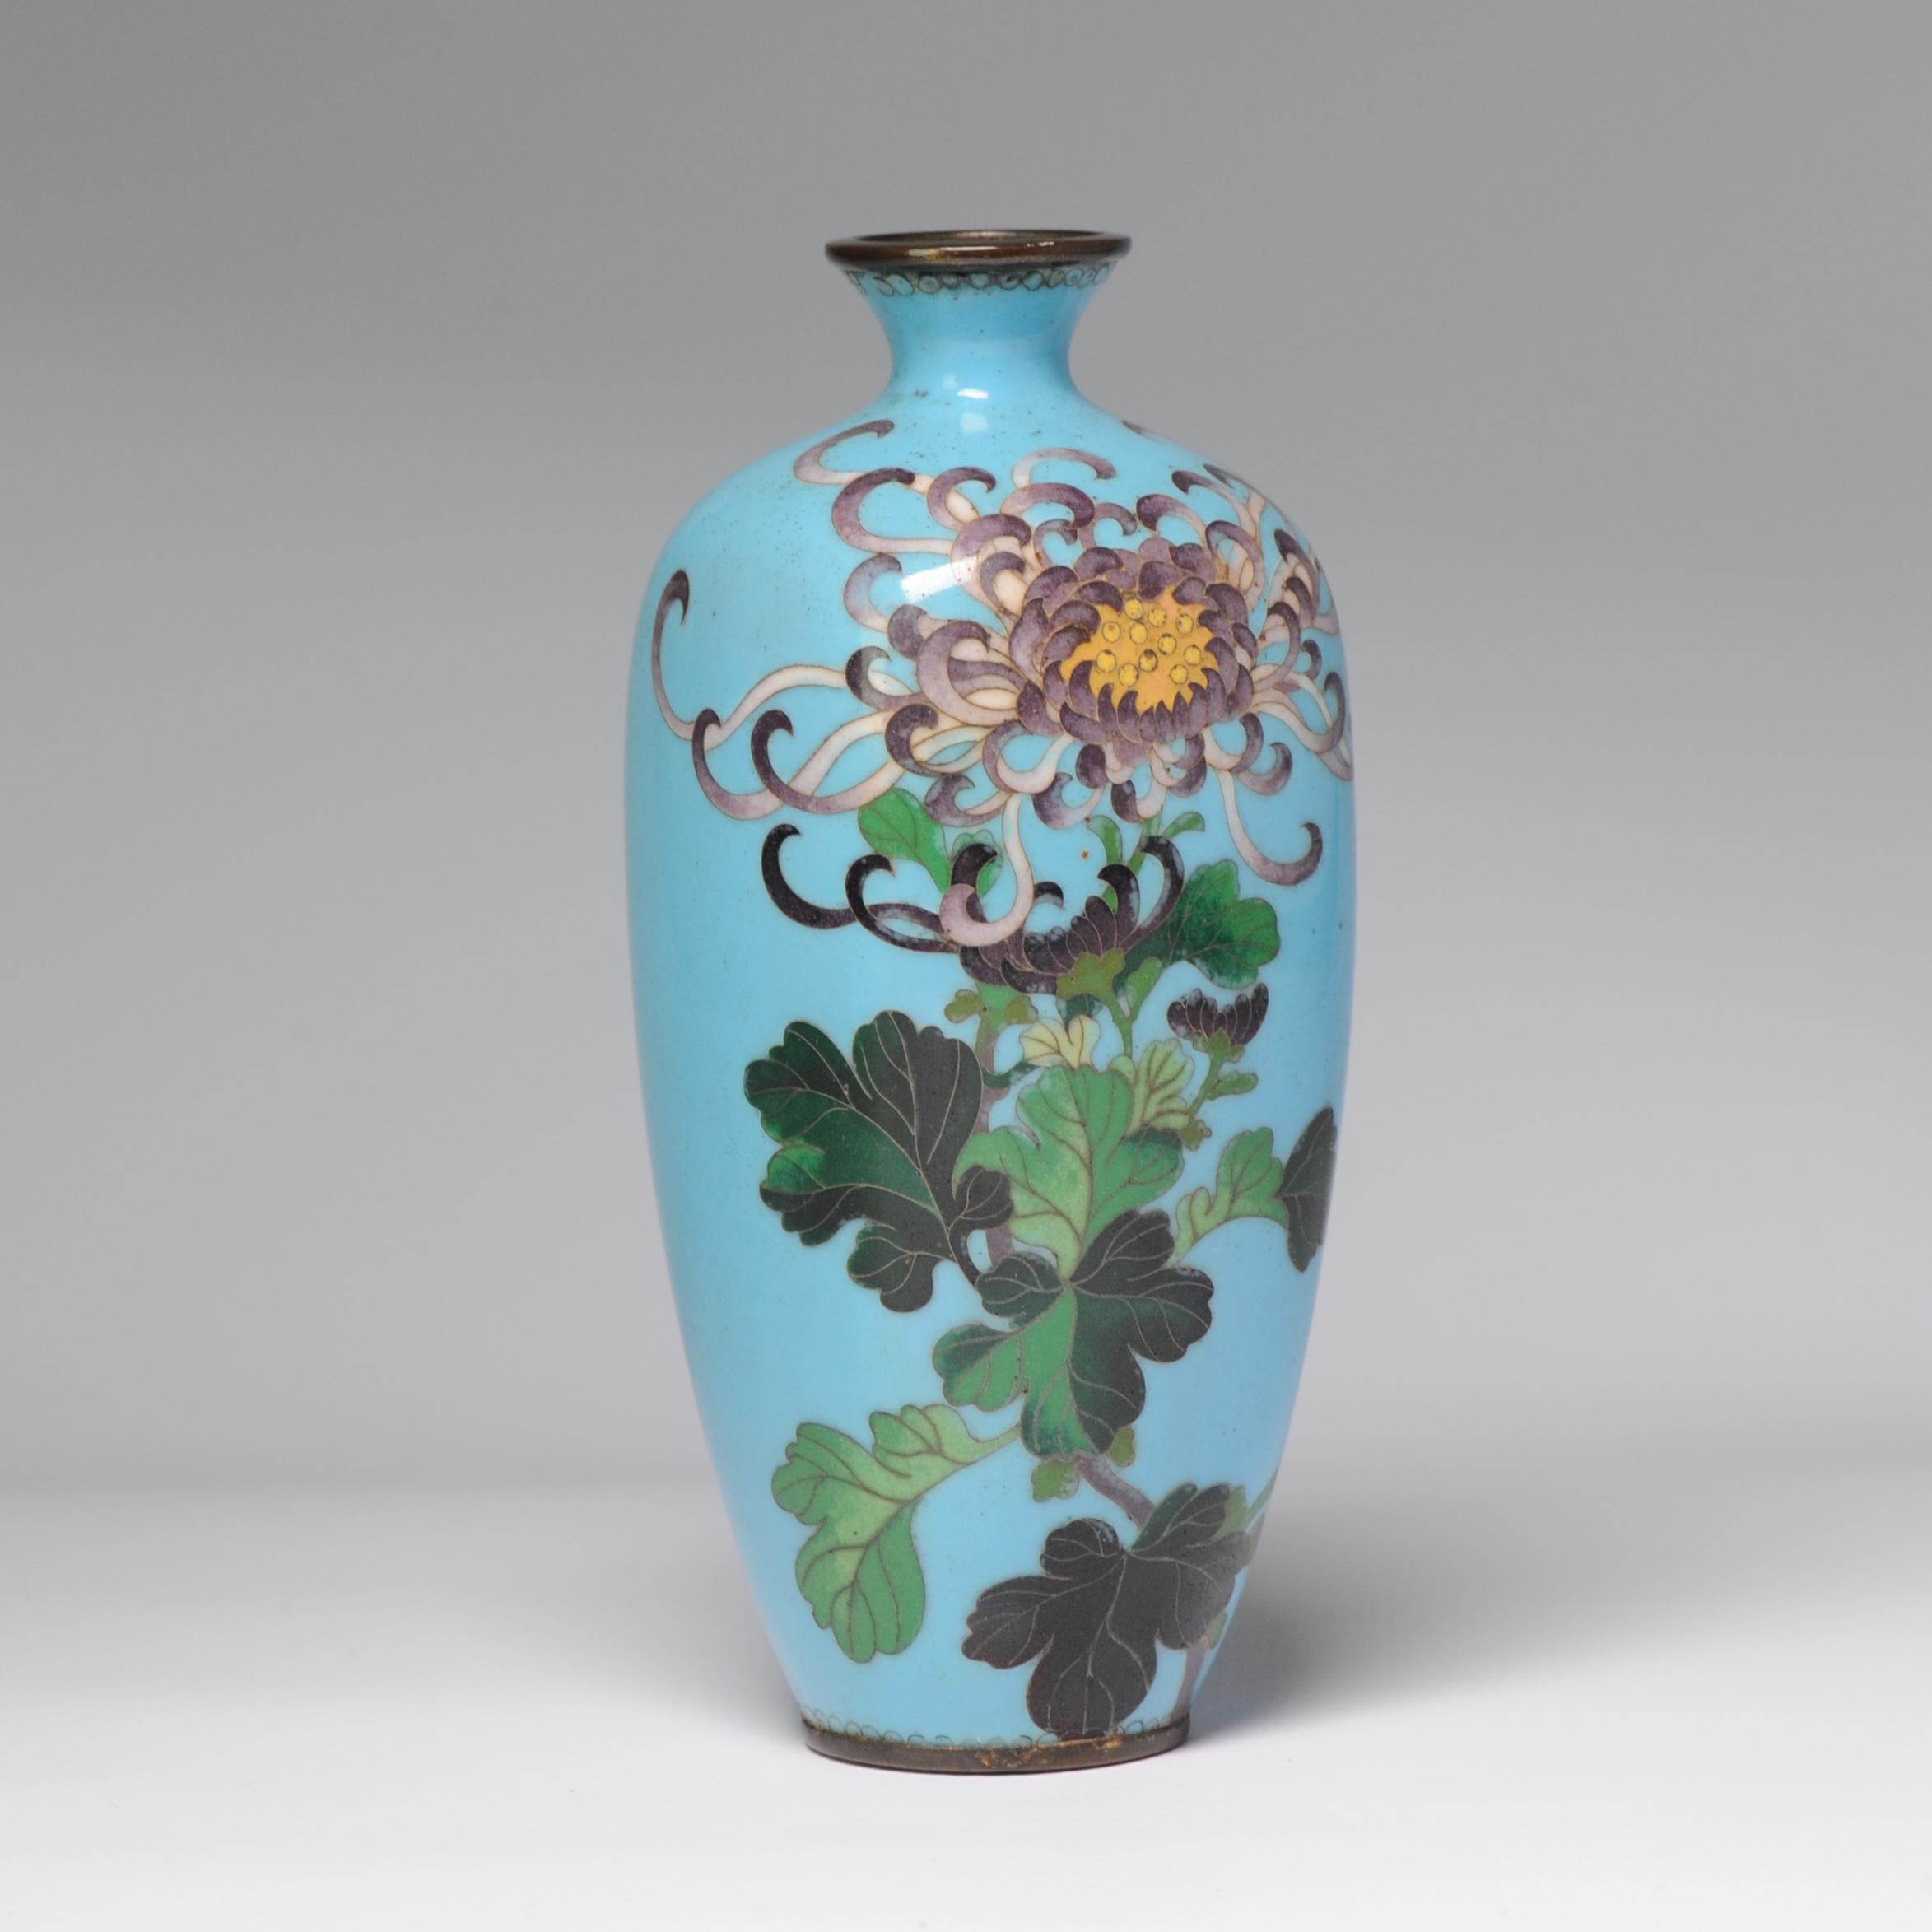 Vase de qualité supérieure absolue avec une superbe décoration de fleurs

Le cloisonné est une méthode d'émaillage d'un objet (généralement en cuivre) qui consiste à utiliser des fils fins pour délimiter les zones décoratives (cloisons en